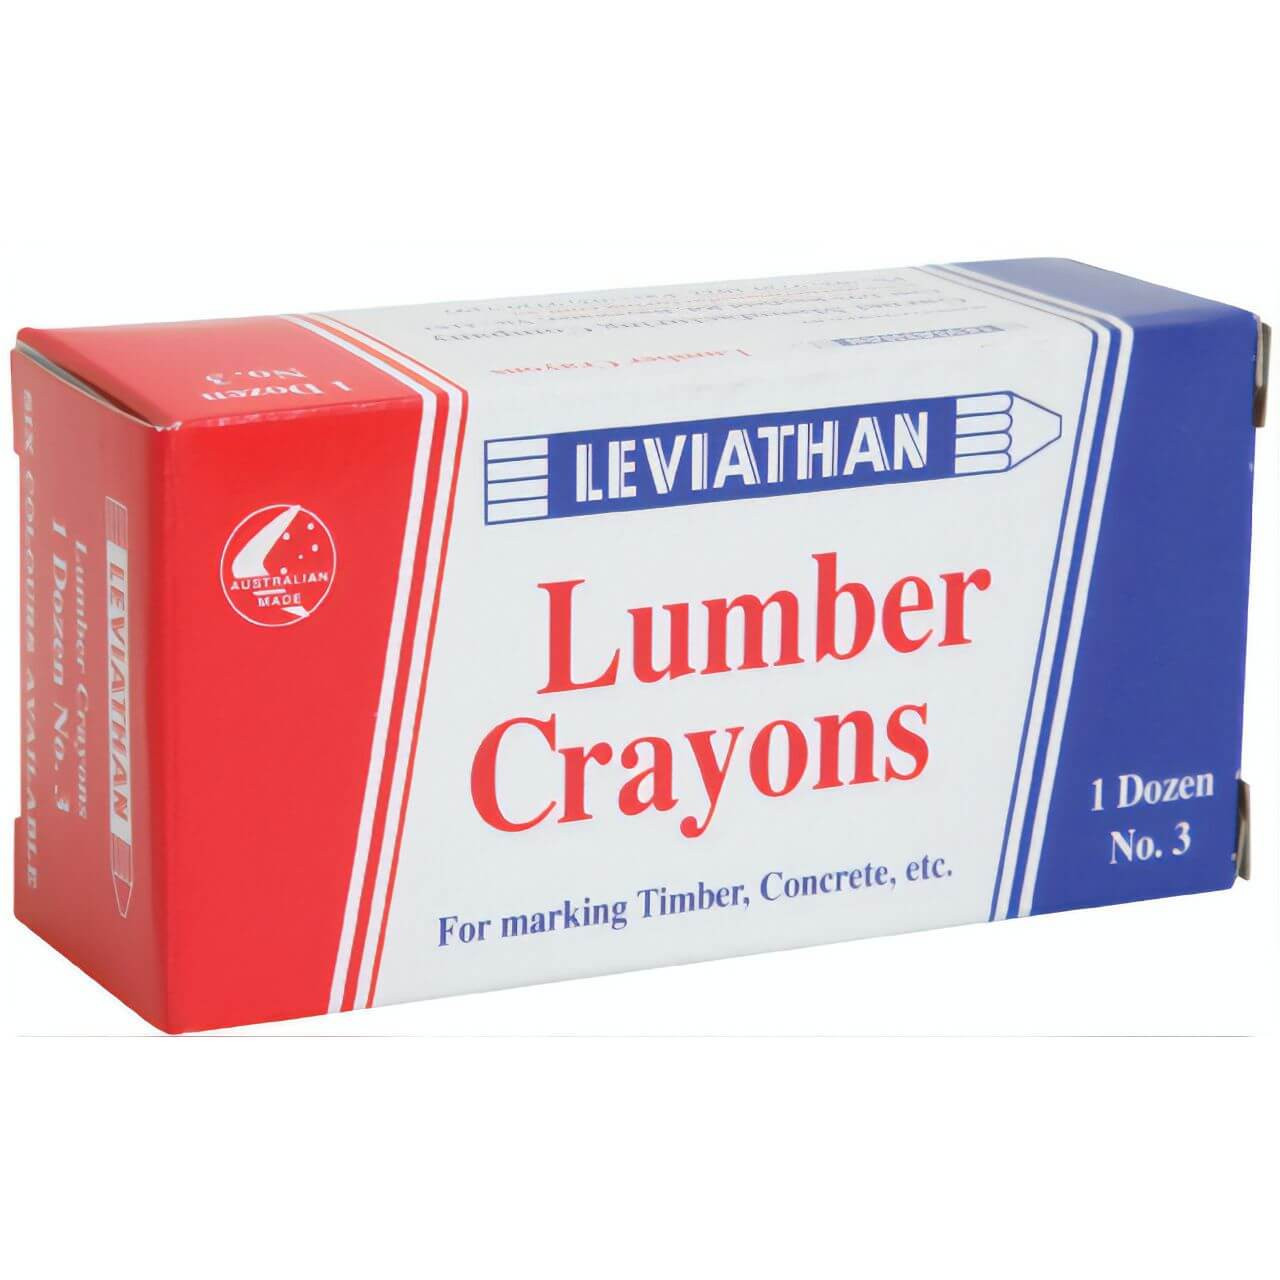 Leviathan No3 Lumber Crayon Yellow 12pk